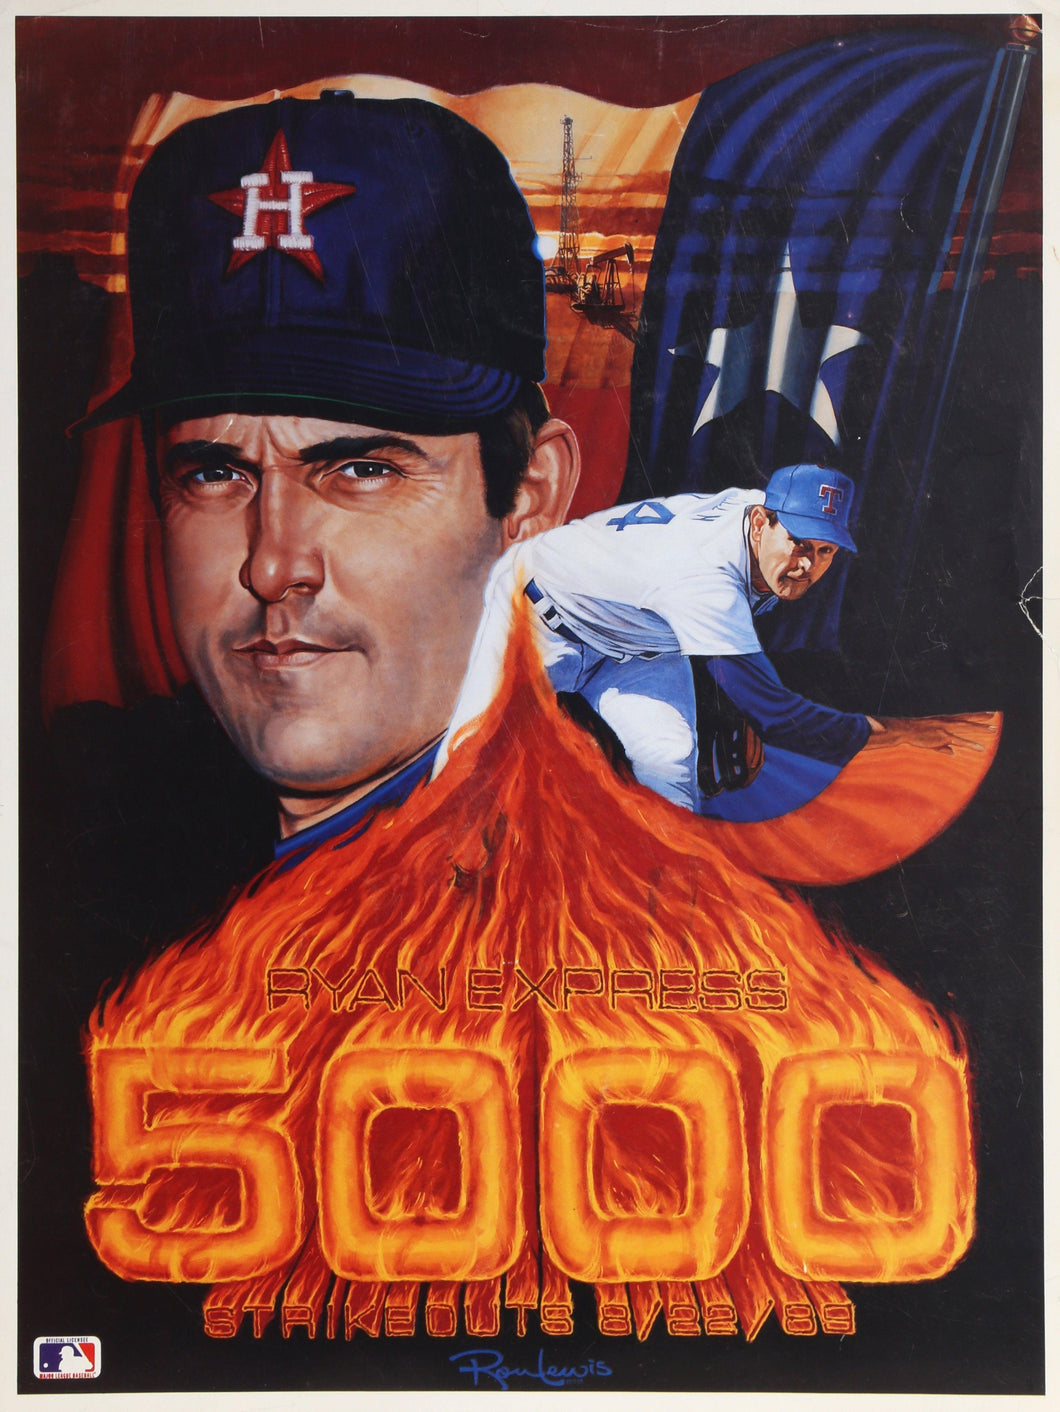 Nolan Ryan 5000 Strikeouts Poster | Ron Lewis,{{product.type}}